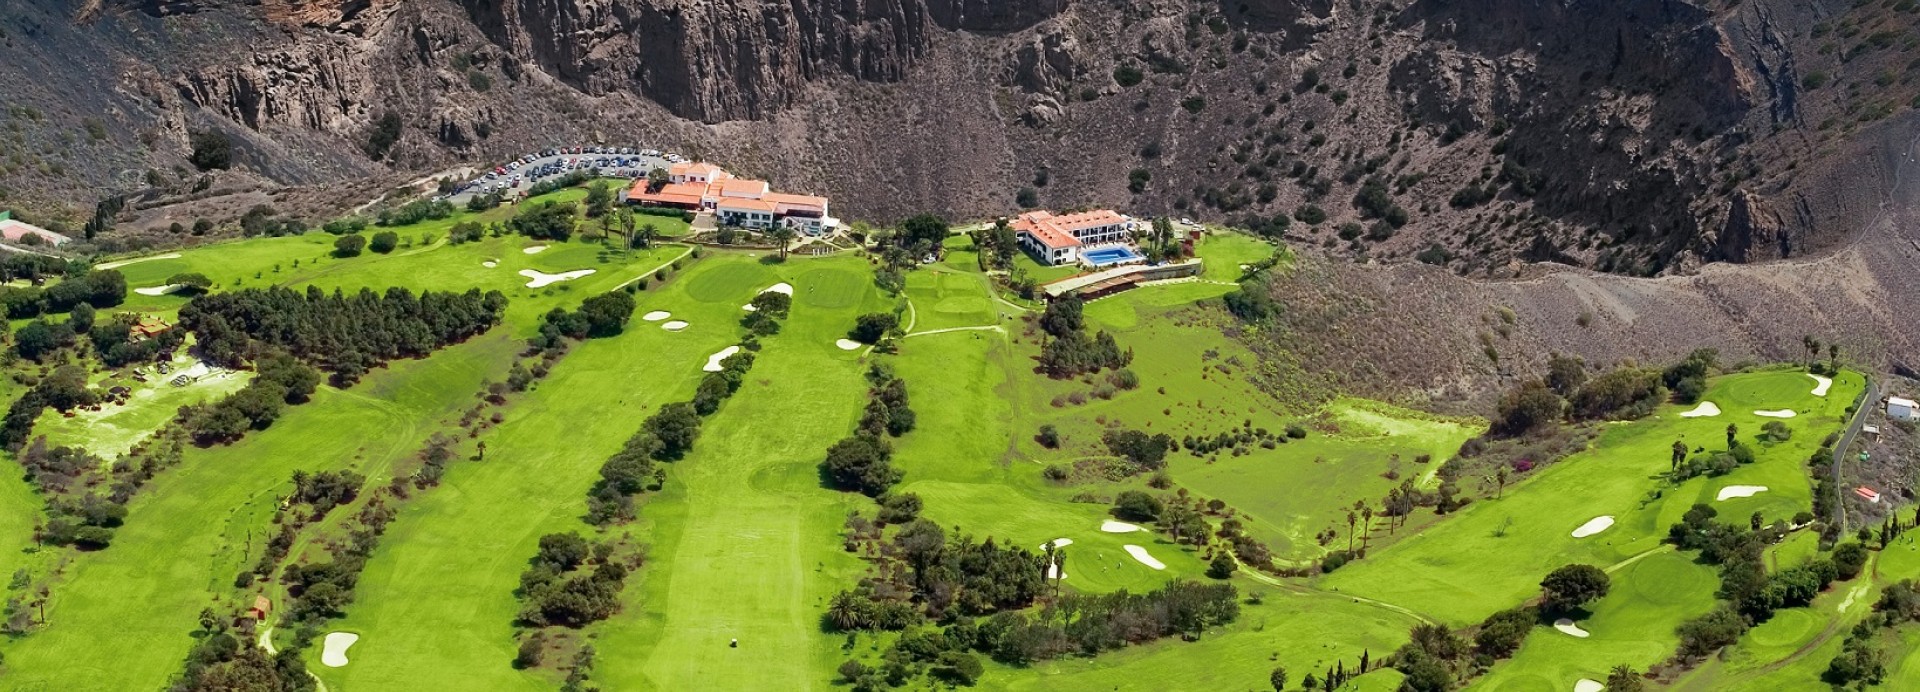 Real Club de Golf Las Palmas  | Golfové zájezdy, golfová dovolená, luxusní golf